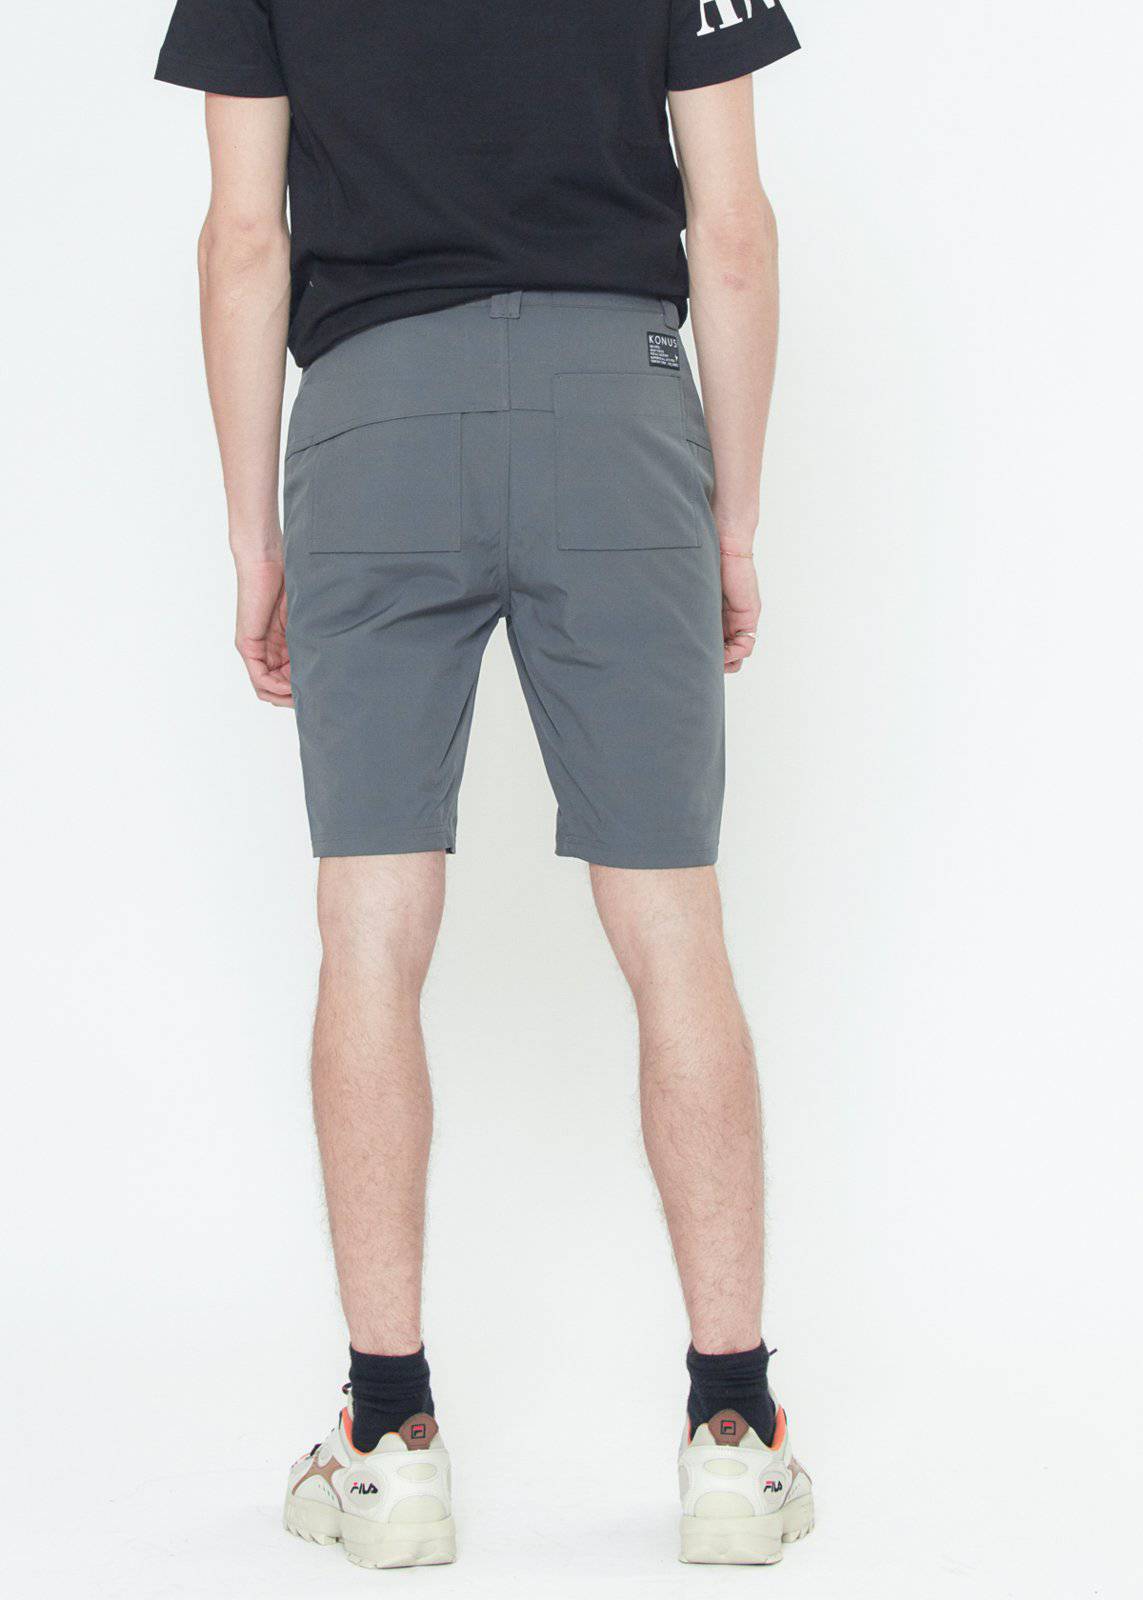 Konus Men's Shorts w/ Asymmetrical Zipper Fly by Shop at Konus